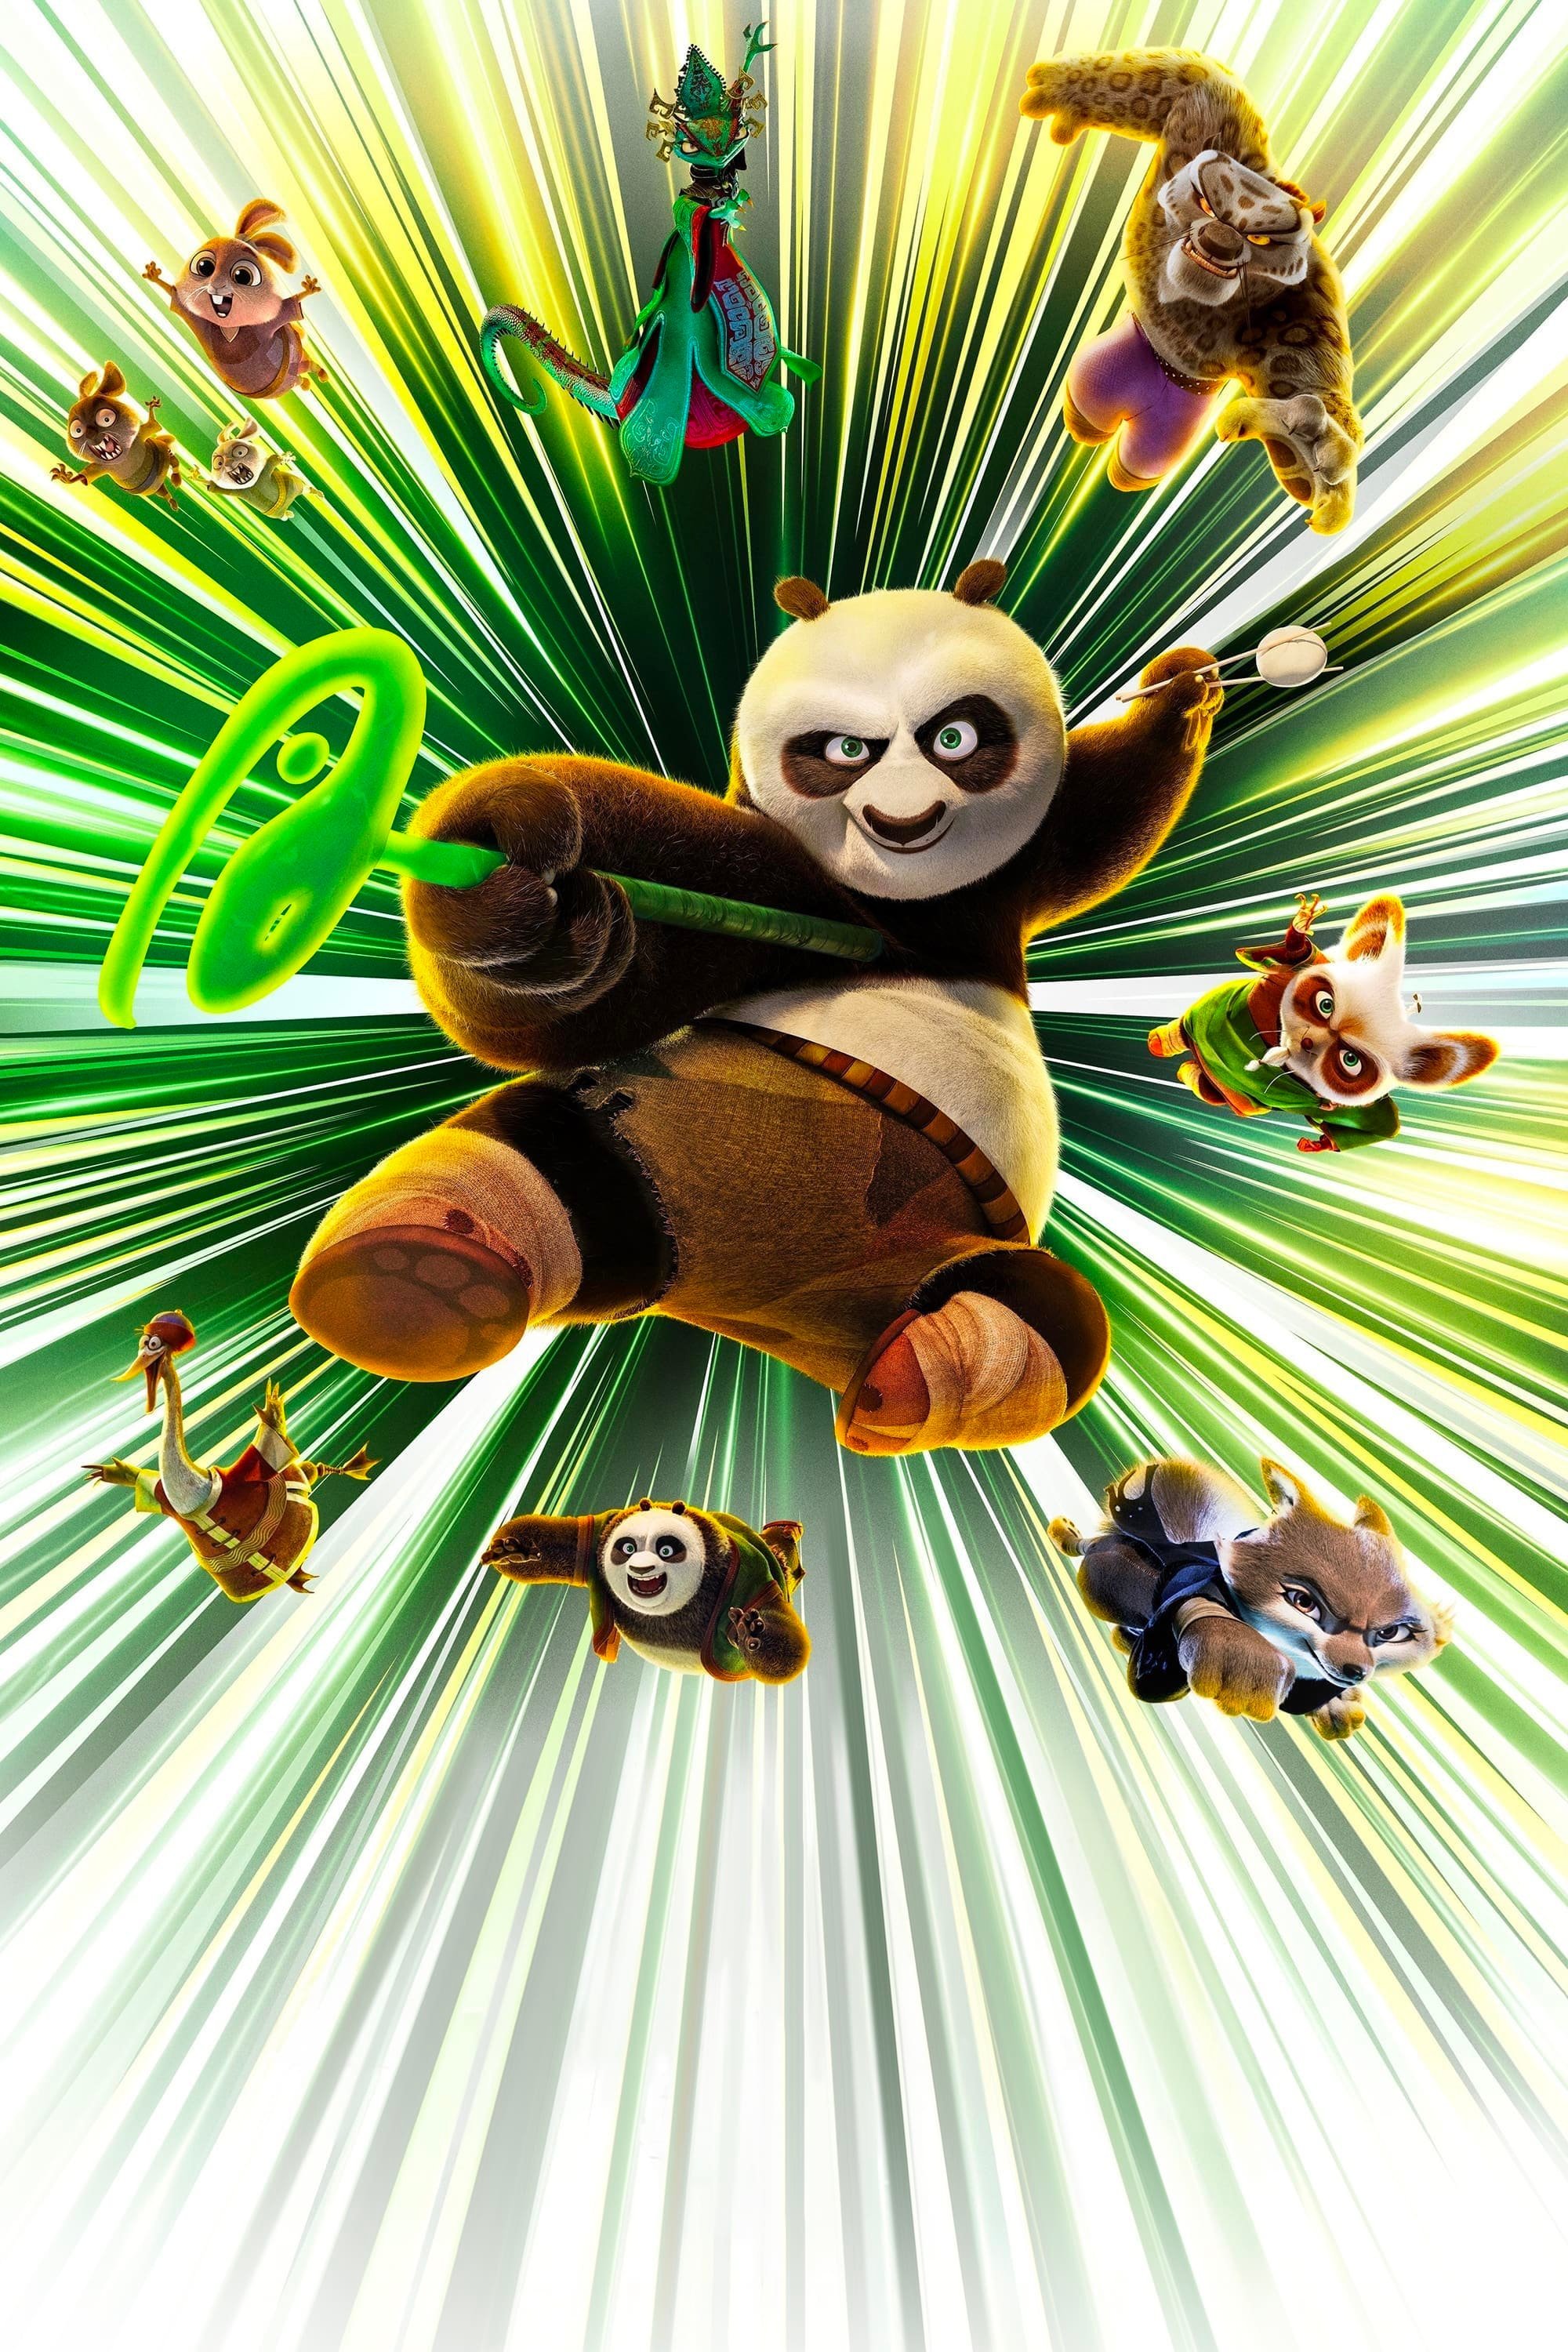 《功夫熊猫4》全天下票房现已经突破5亿美元